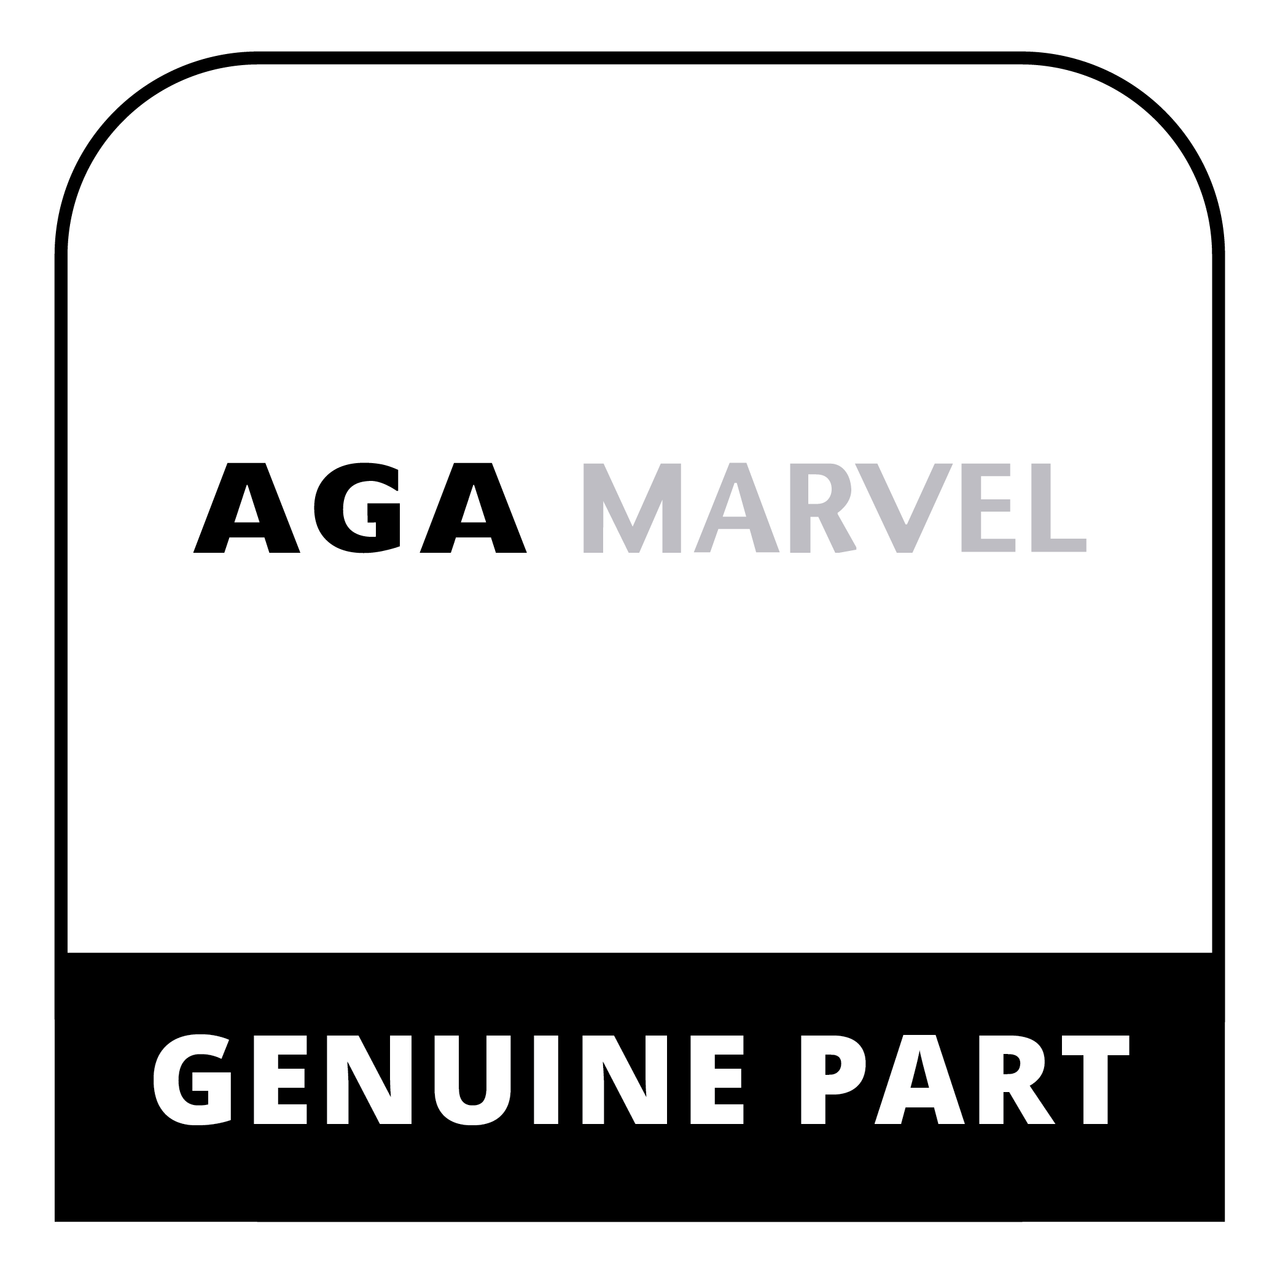 AGA Marvel RG4M313287 - Gas Valve H/Well V4600T1011 - Genuine AGA Marvel Part